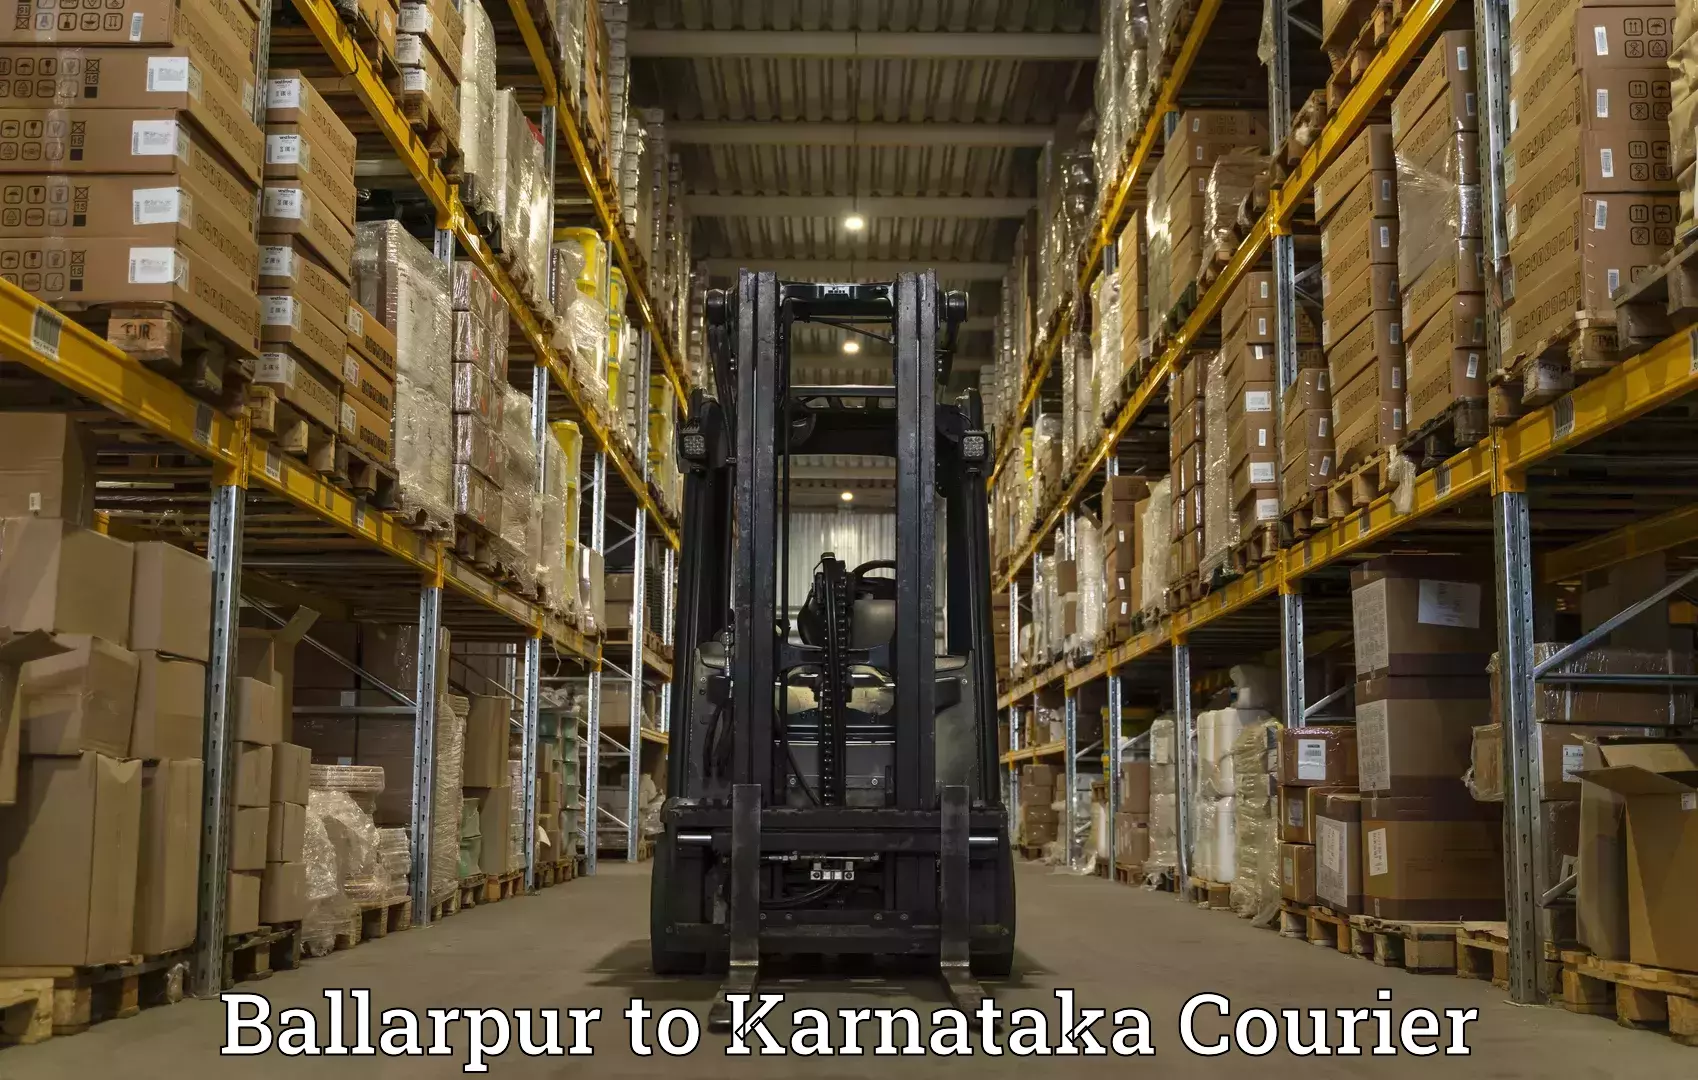 Express courier facilities Ballarpur to Hiriyur